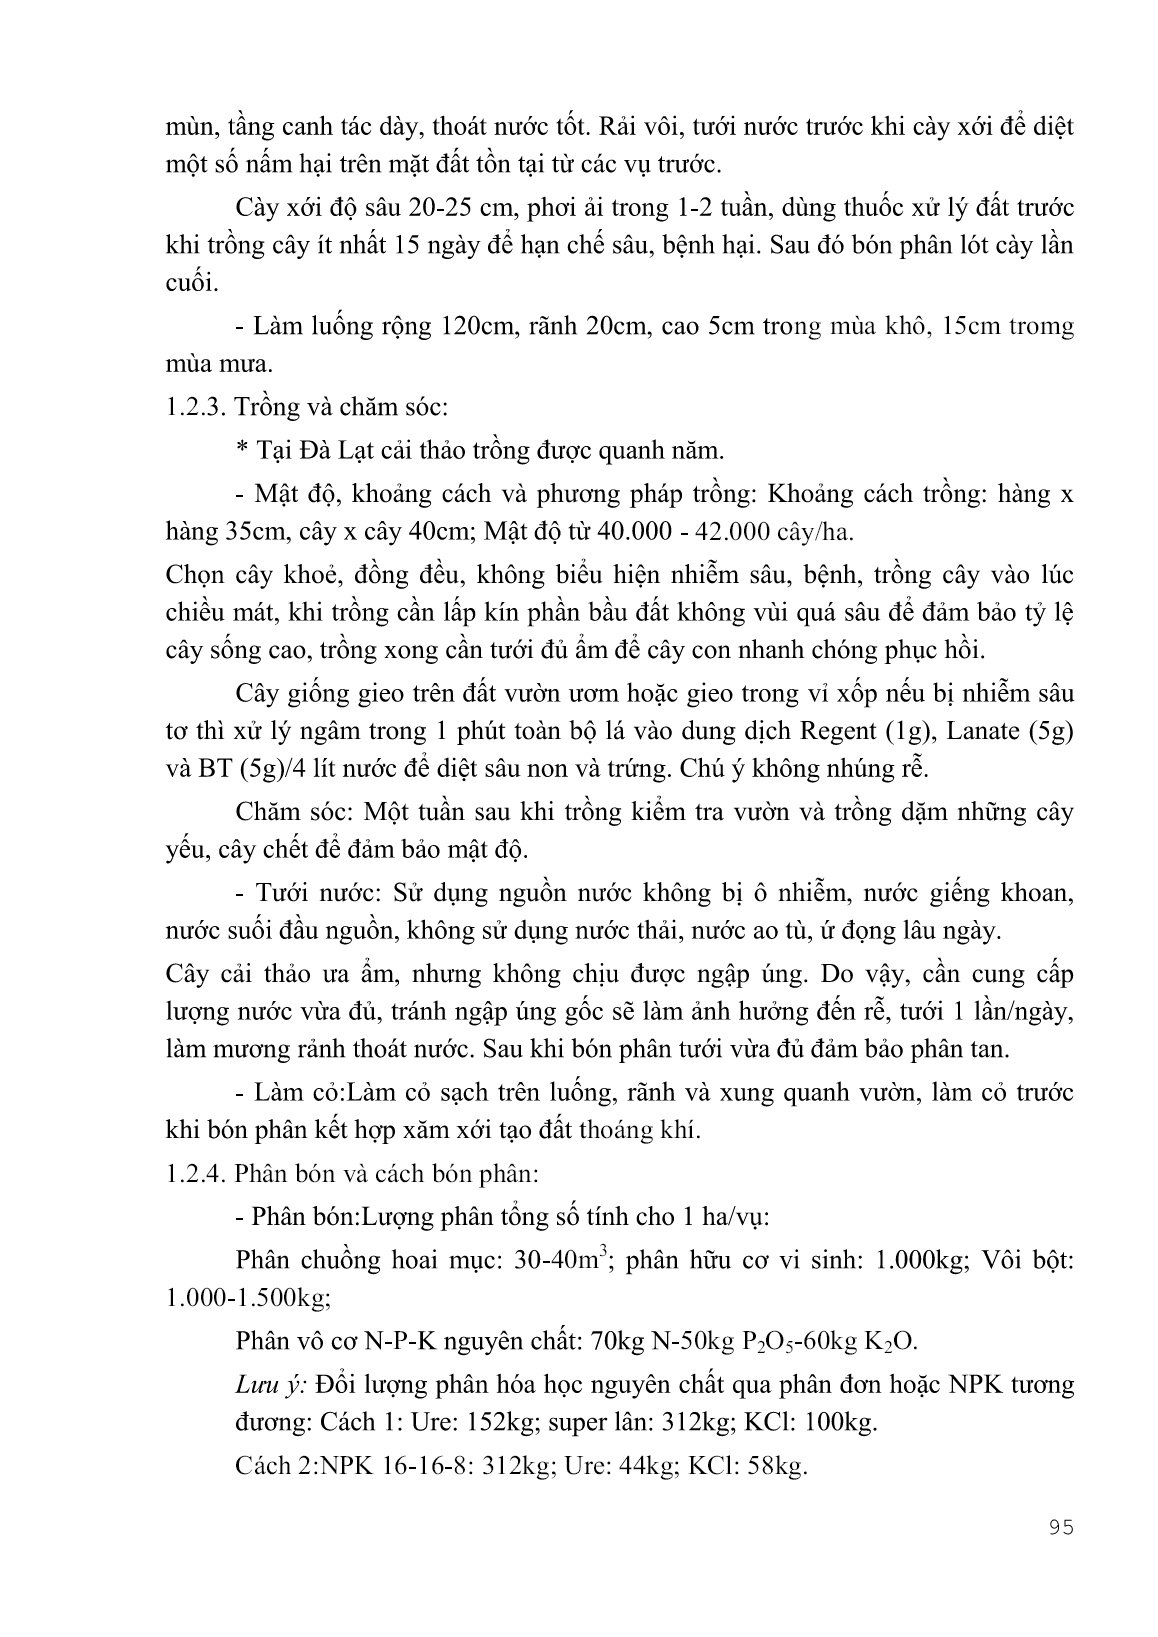 Giáo trình Kỹ thuật canh tác rau, hoa - Phần 2 (Trình độ: Cao đẳng) trang 9